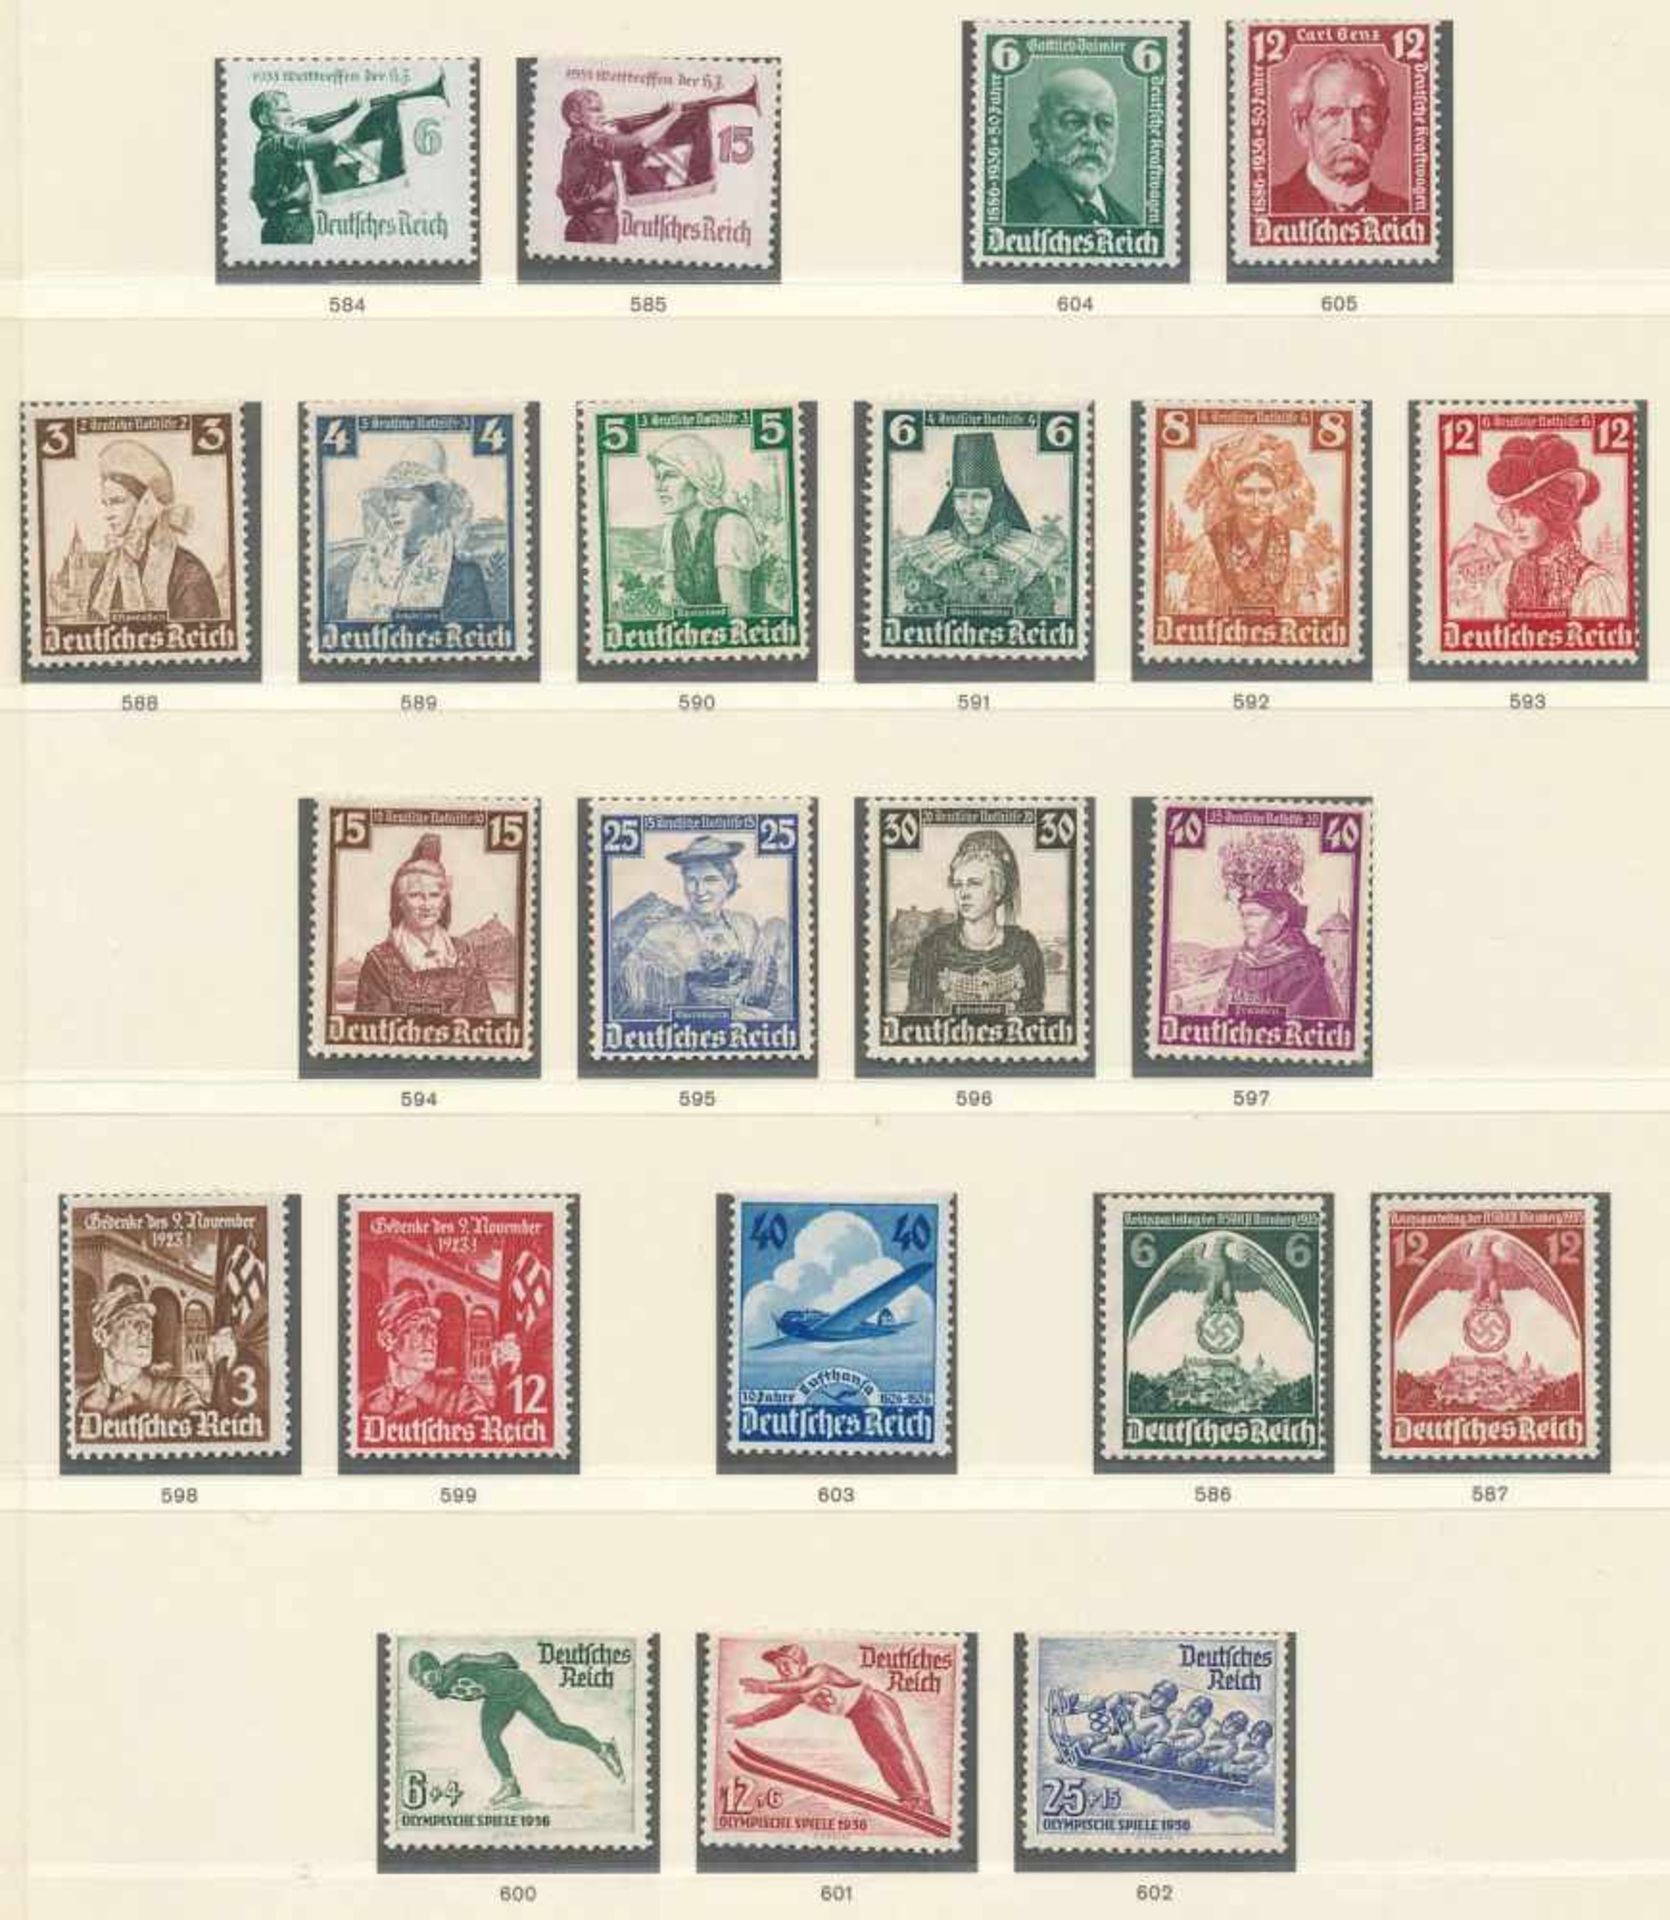 1 Sammlung "Deutsches Reich", in ungebrauchter Erhaltung mit den MiNr. 584-620, 622, 623 sowie 634-